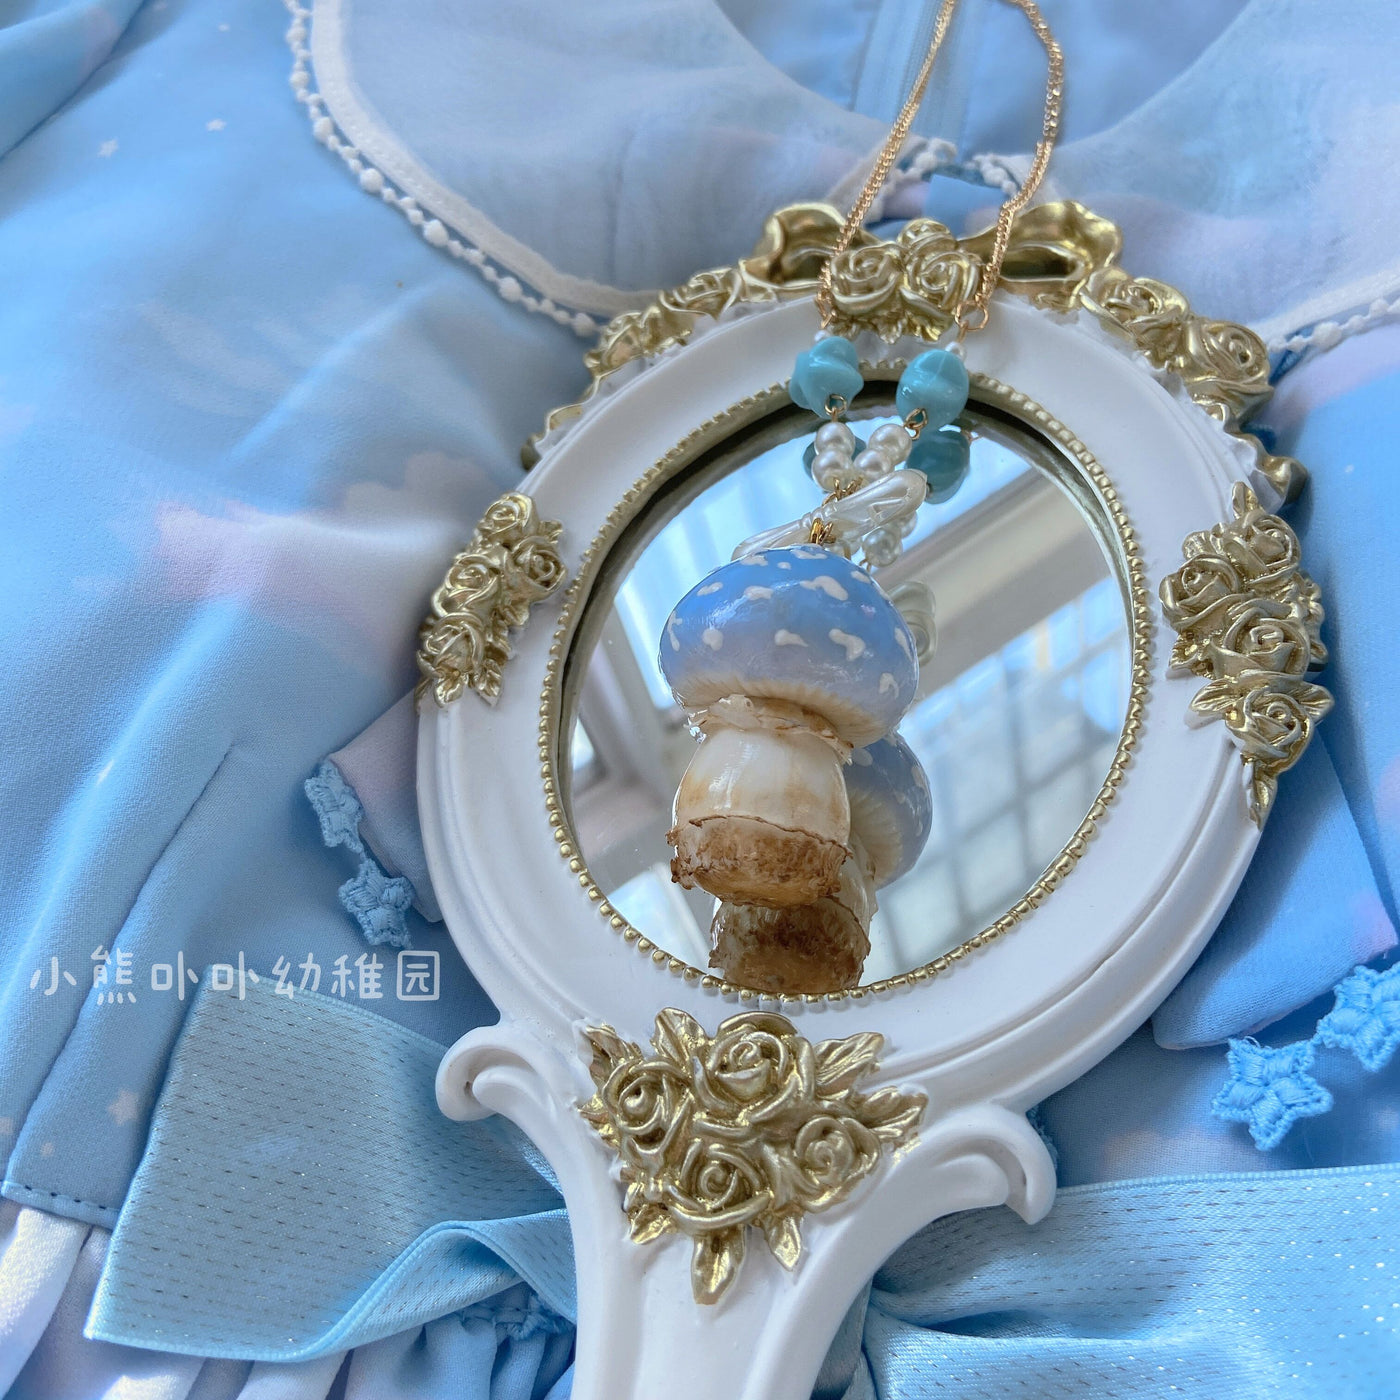 Bear Doll~Handcraft Kawaii Lolita Mushroom Necklace blue mushroom  